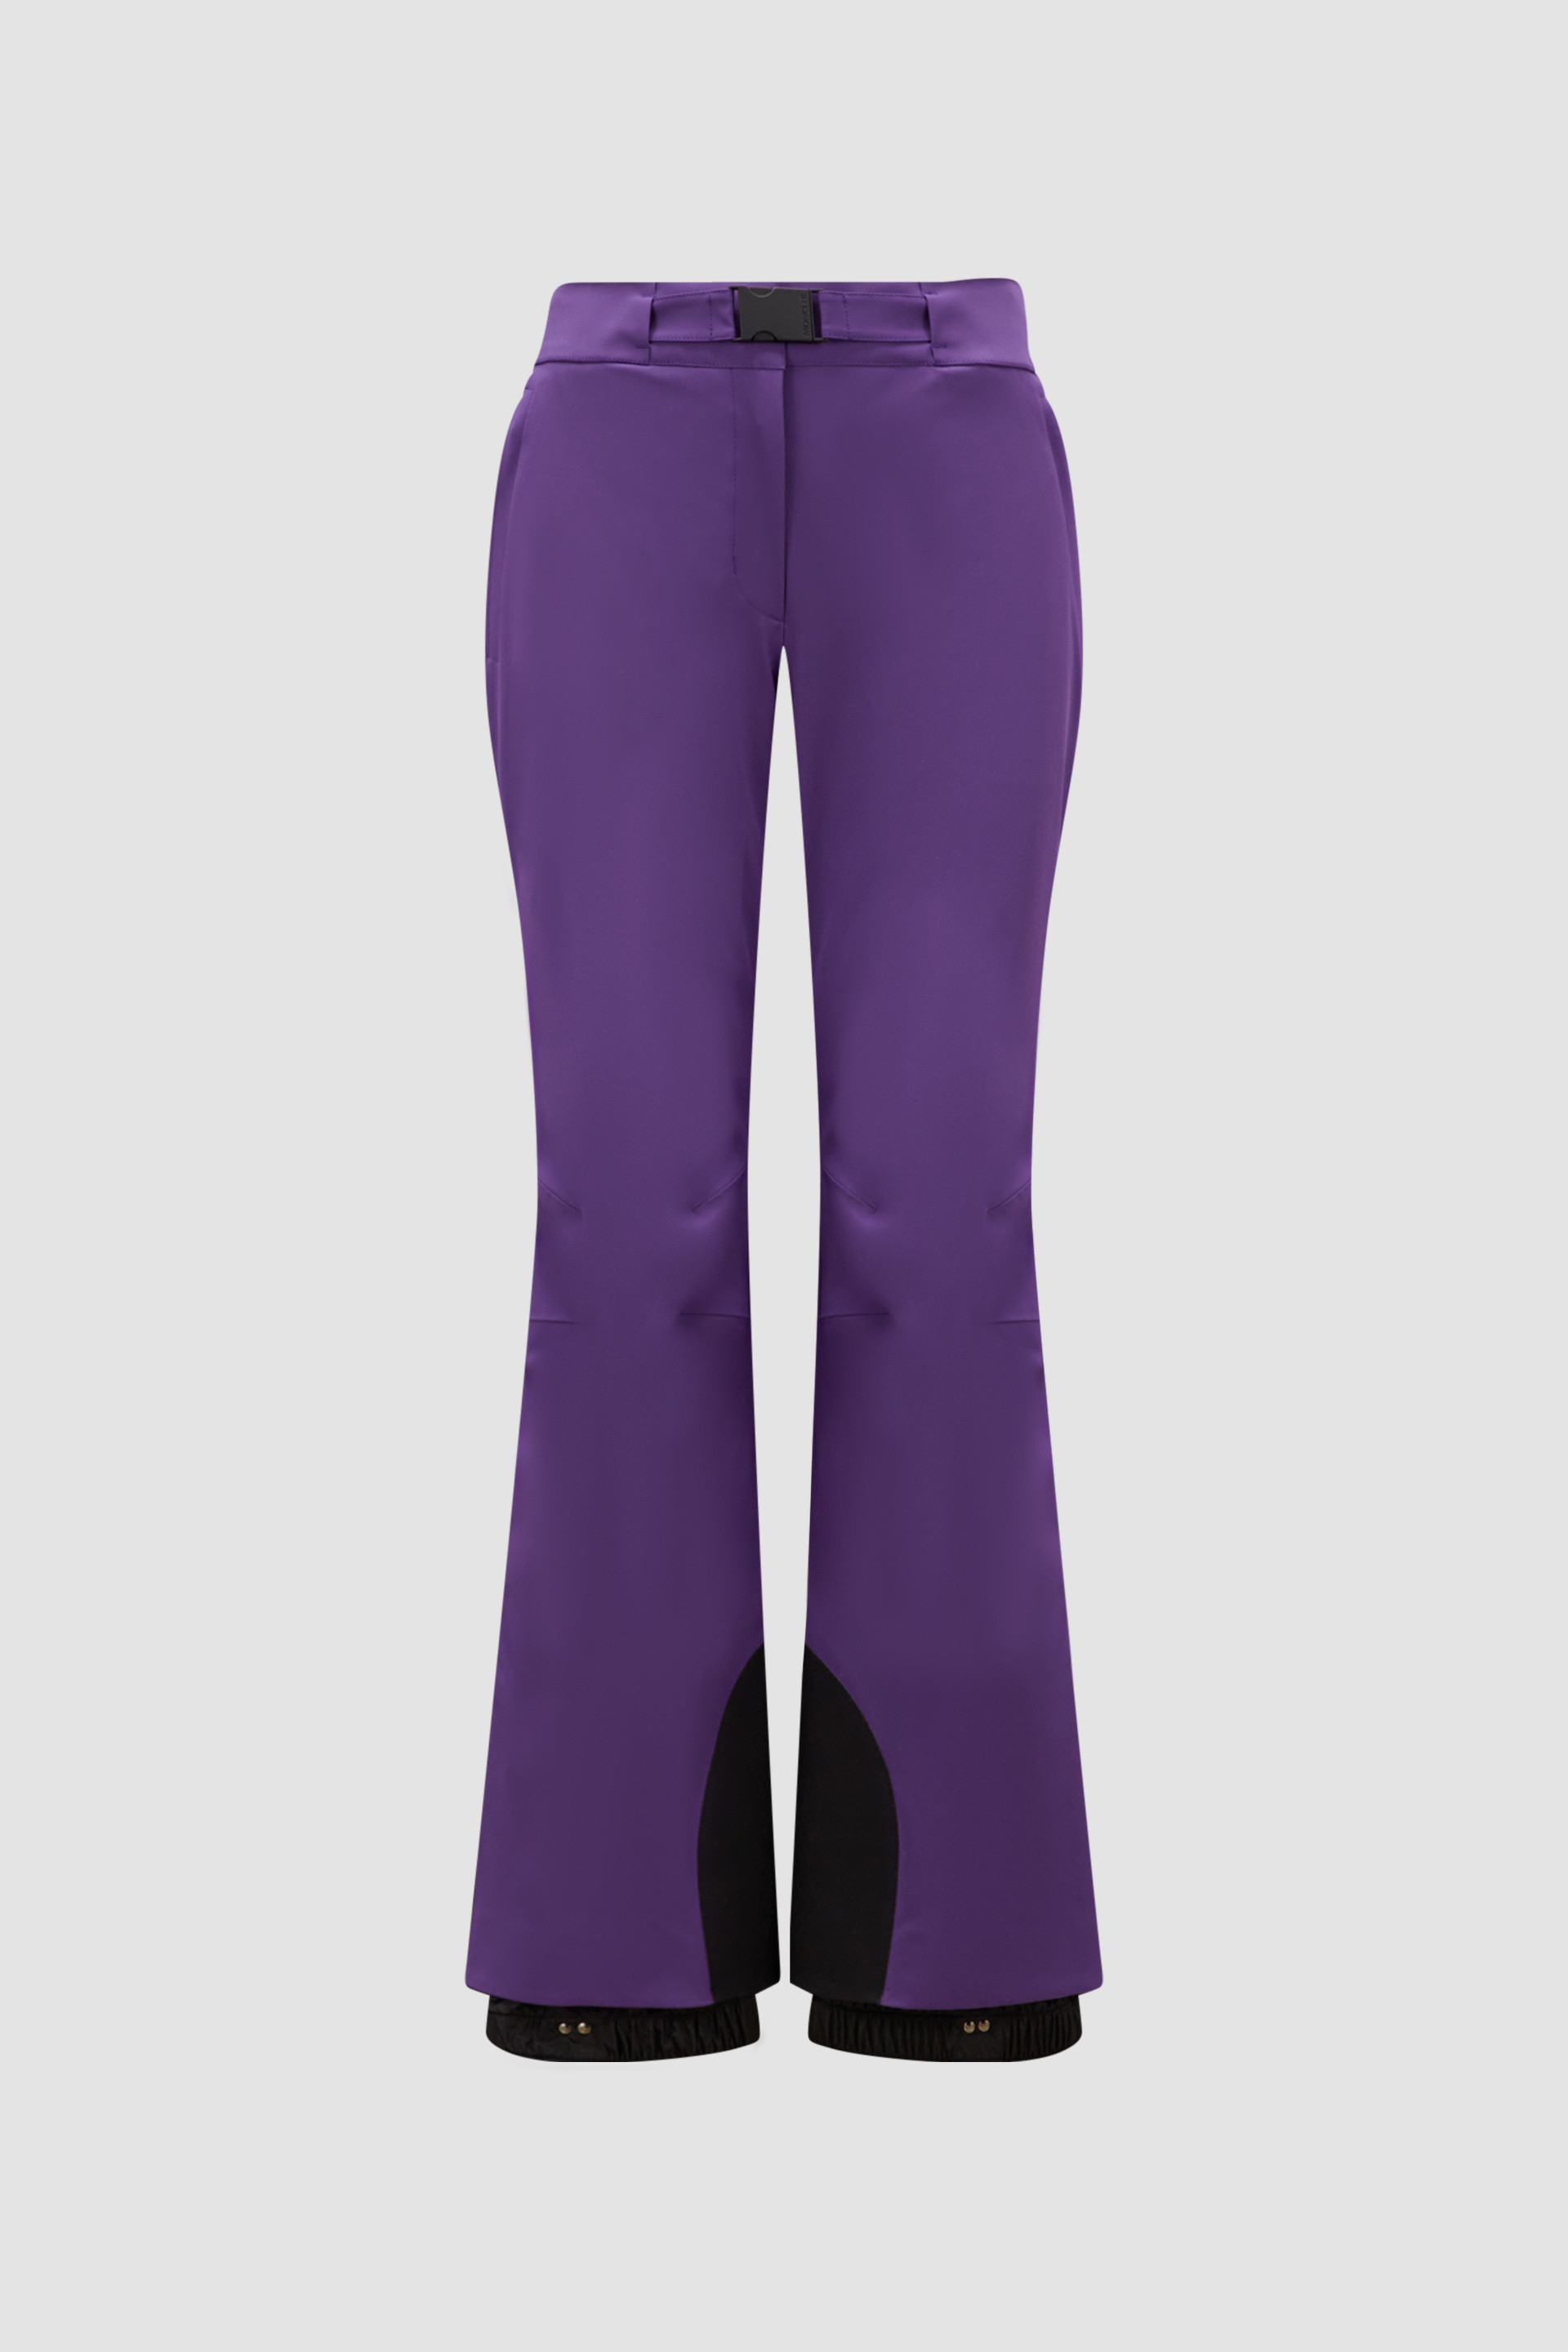 Purple Ski Pants - Pants & Shorts for Women